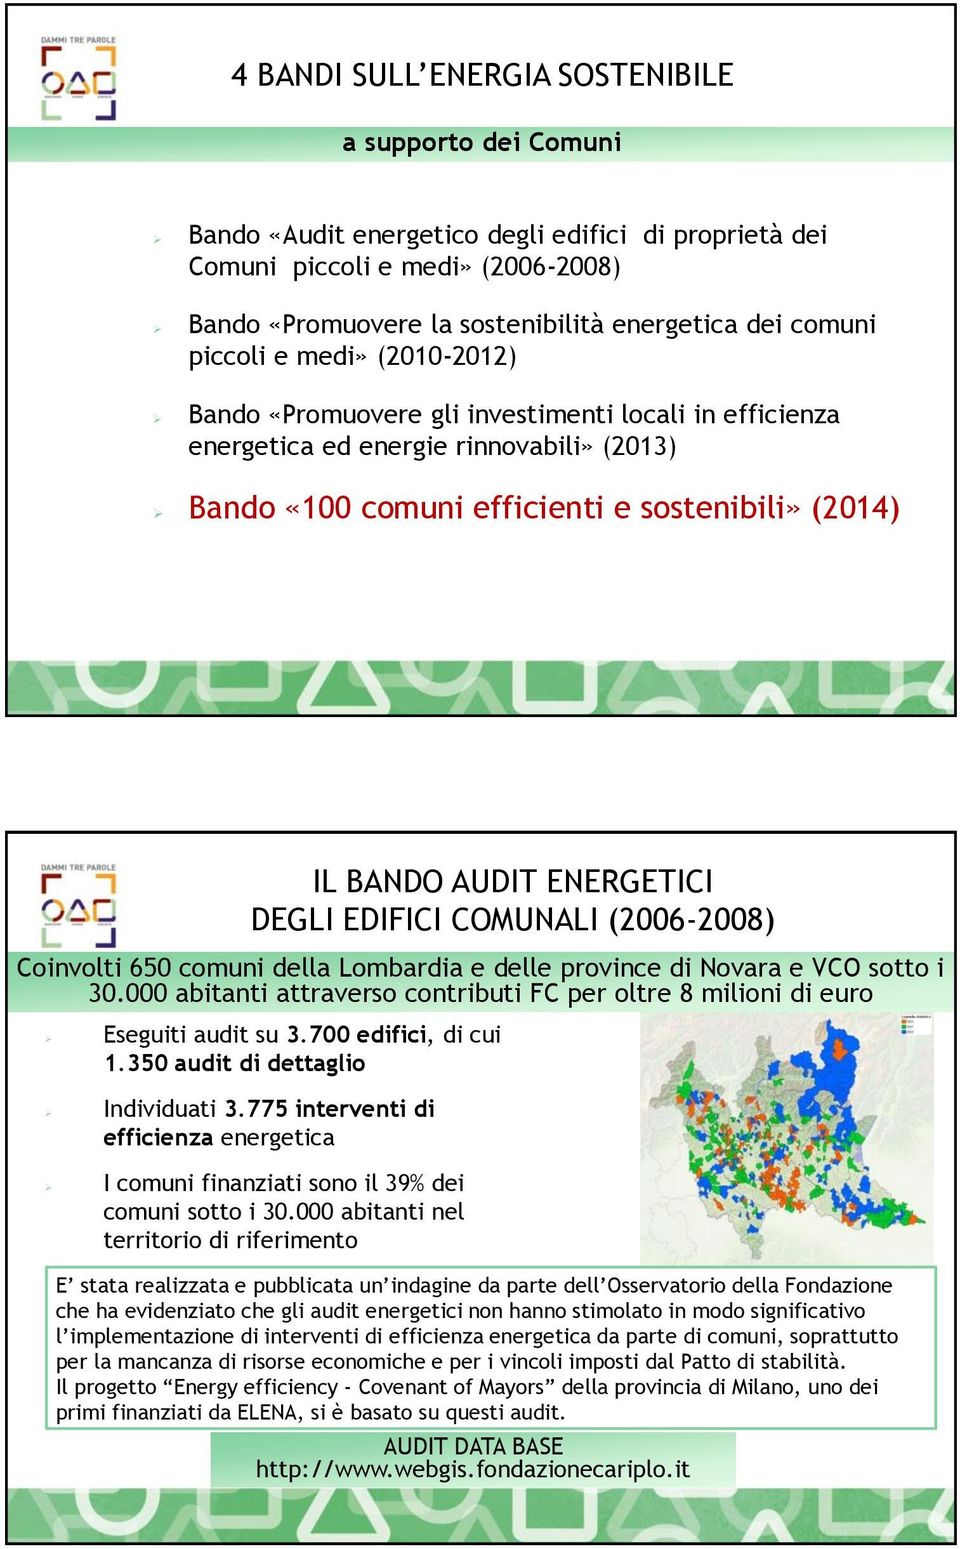 ENERGETICI DEGLI EDIFICI COMUNALI (2006-2008) Coinvolti 650 comuni della Lombardia e delle province di Novara e VCO sotto i 30.